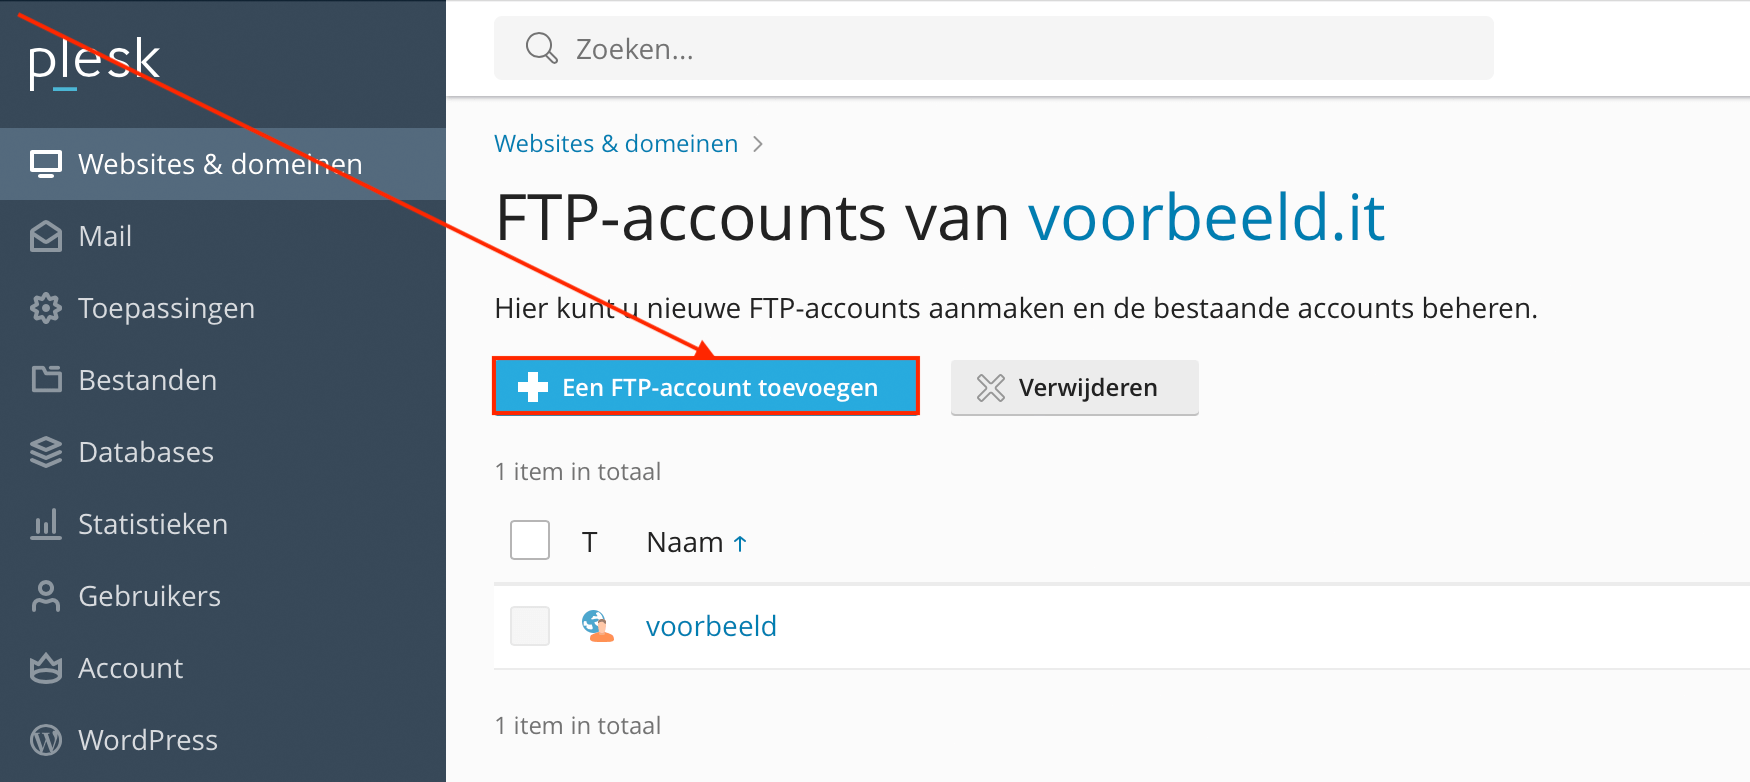 Een FTP-account toevoegen